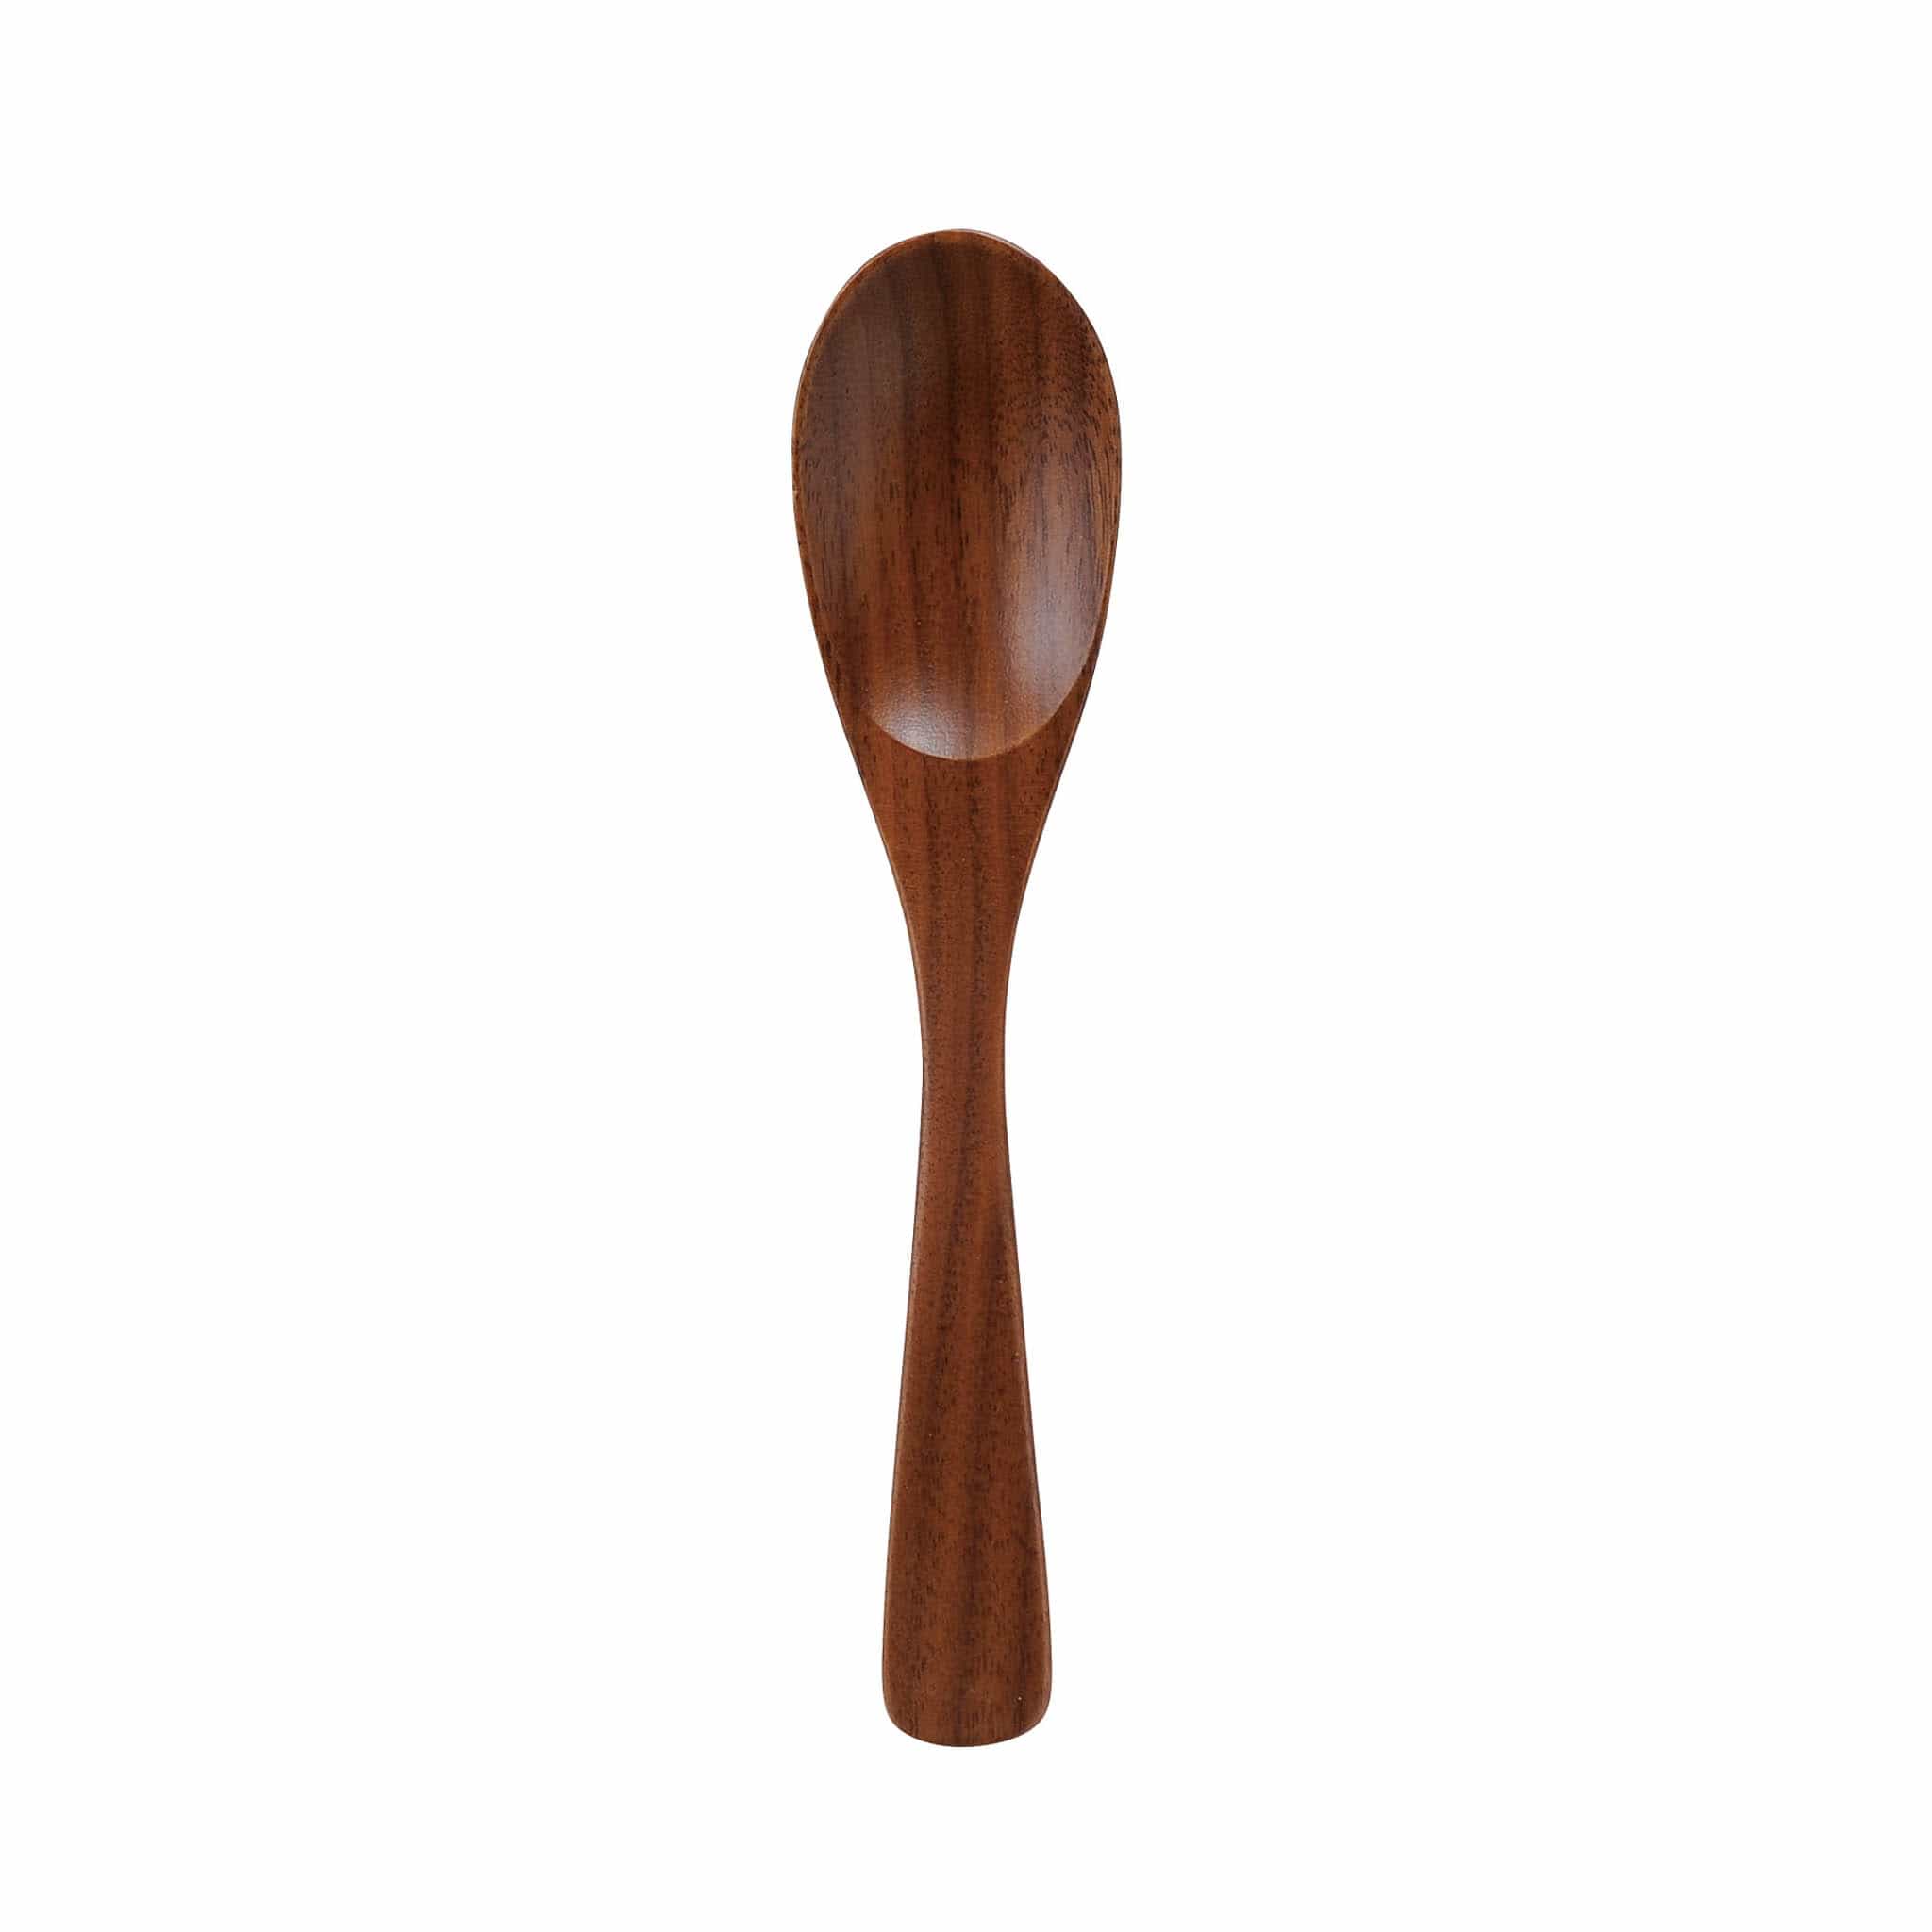 Walnut Wood Curry Spoon, 17.5cm